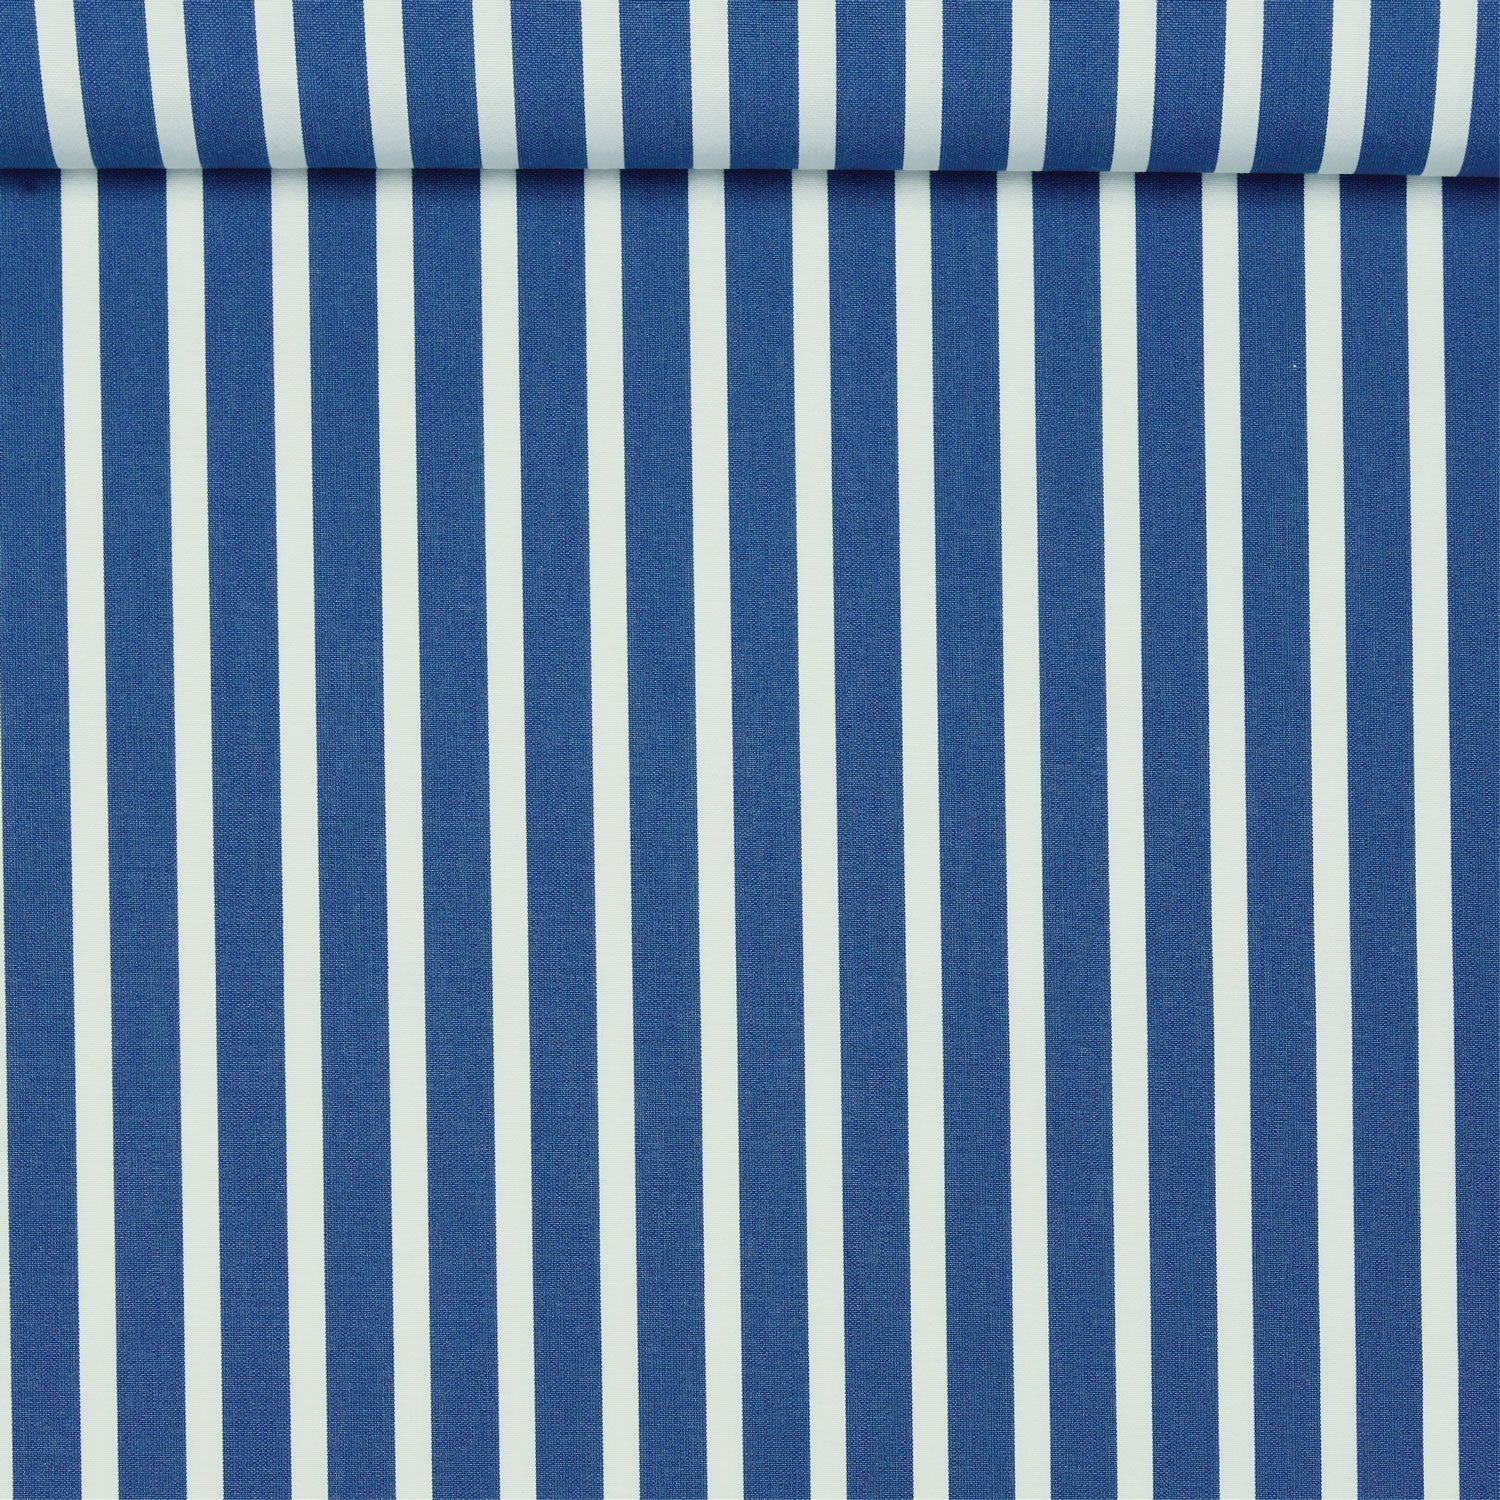 Tissu acrylique teint dans la masse, rayé bleu et blanc, utilisé pour les flotteurs de piscine de luxe.